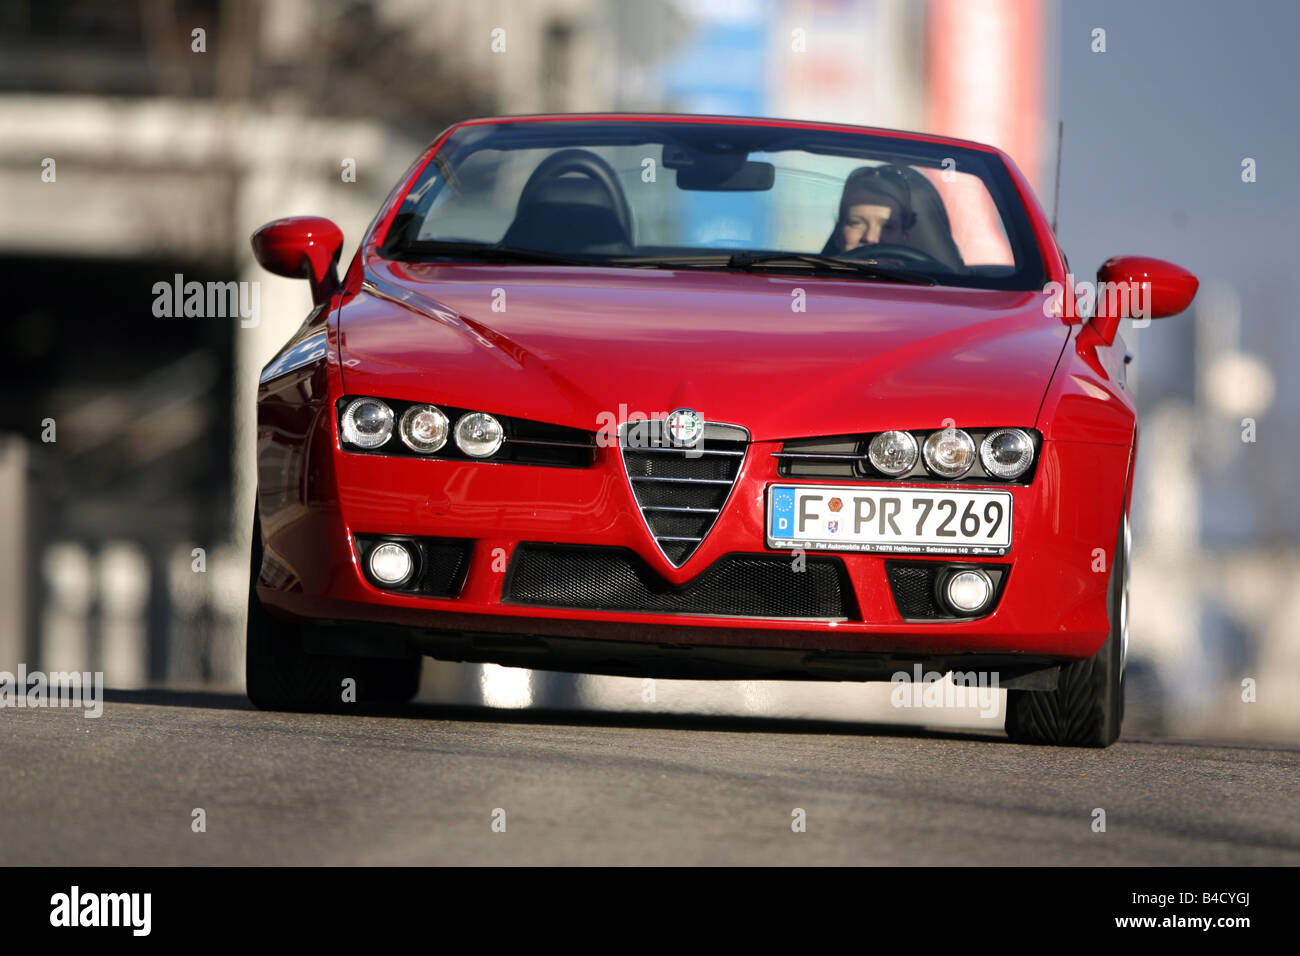 Alfa Romeo Spider 2.2 JTS Exclusive, Modell Jahr 2007-rot, fahren, Vorderansicht, Stadt, oben offen Stockfoto